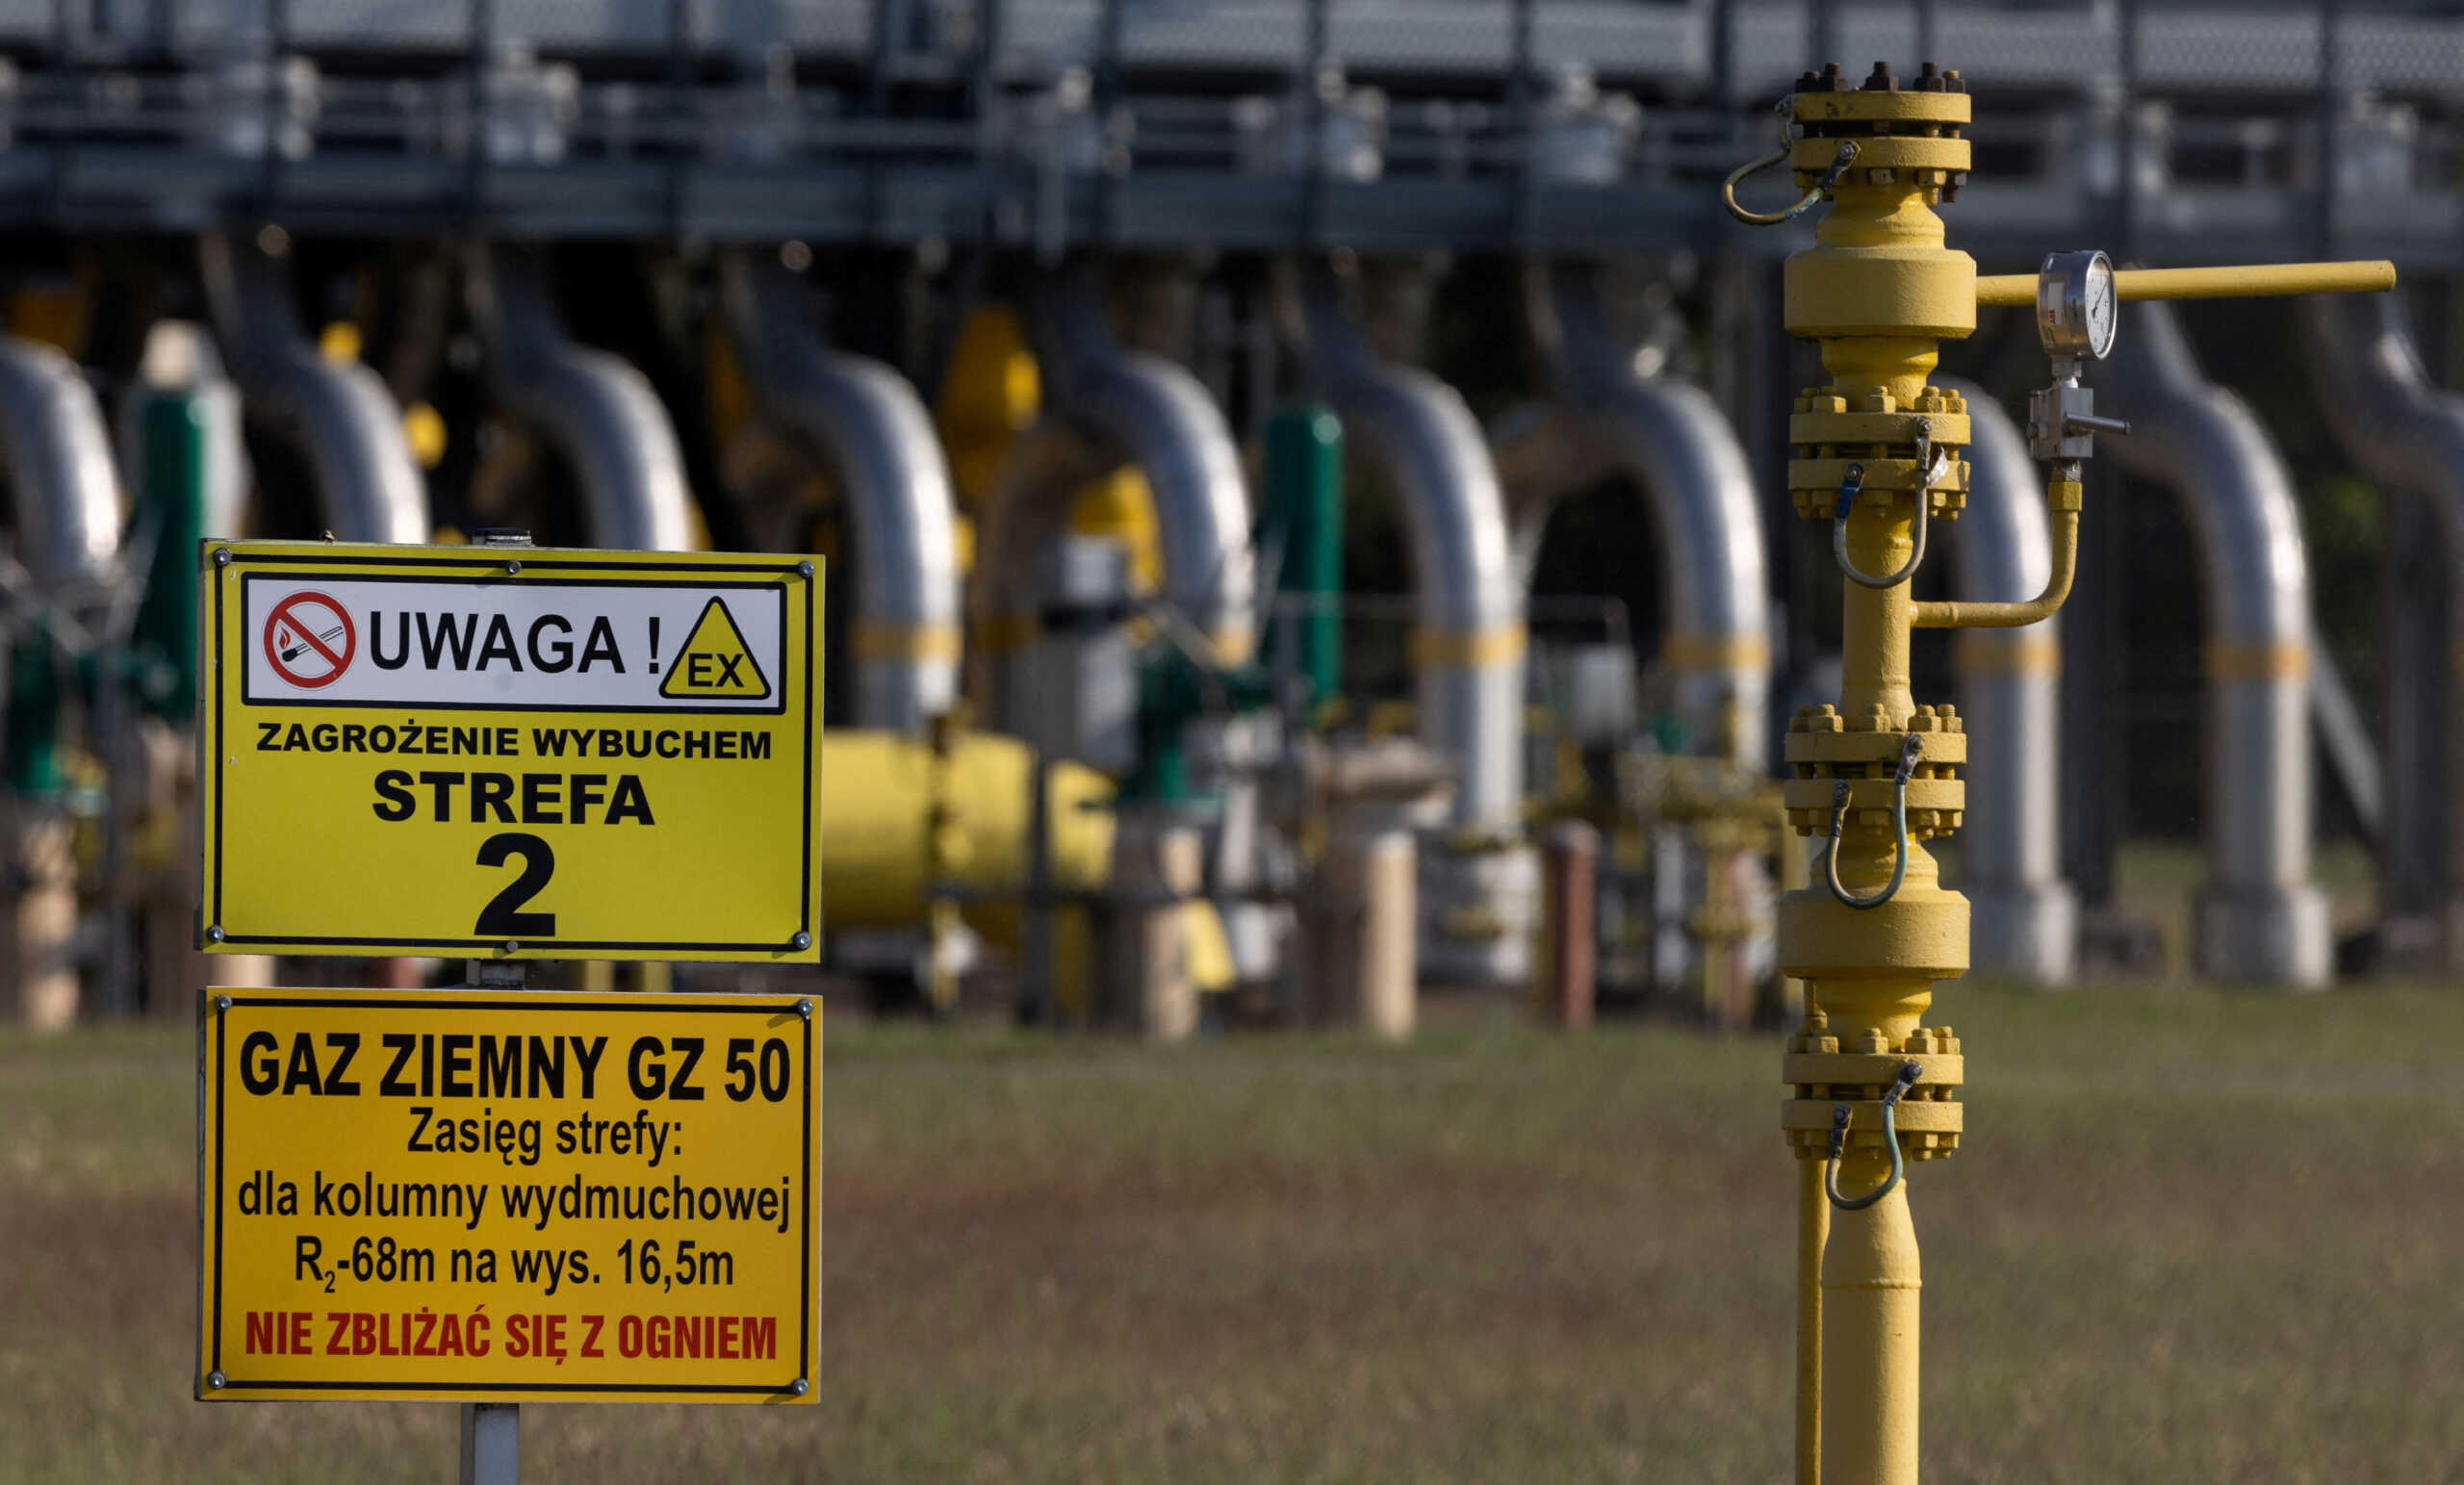 Συμφωνία των υπουργών Ενέργειας για πλαφόν στην τιμή του φυσικού αερίου